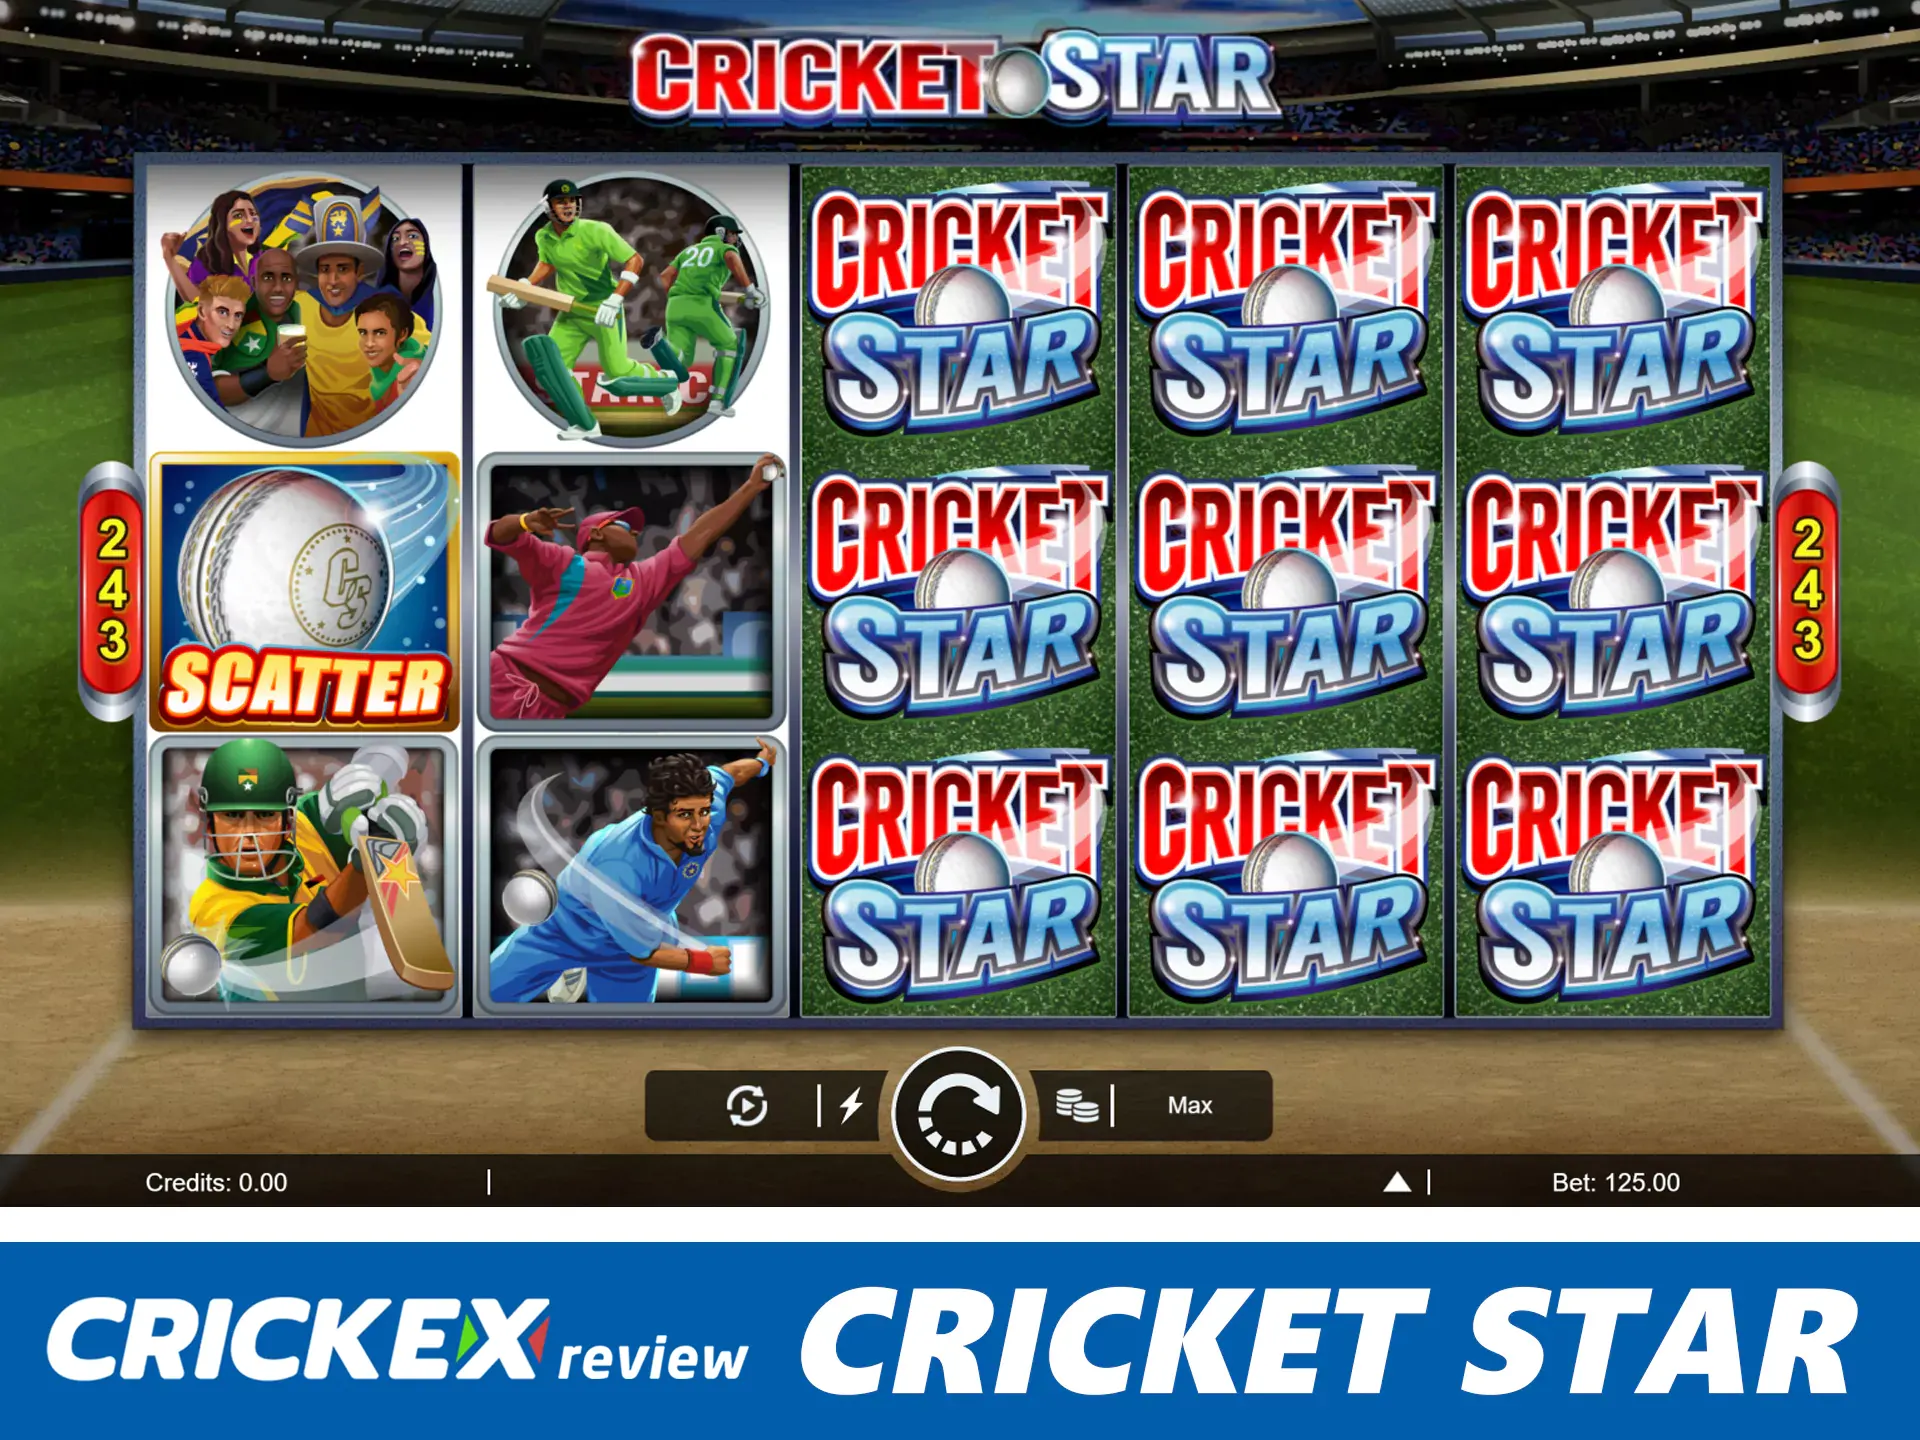 Play at cricket star slots and win big prizes.